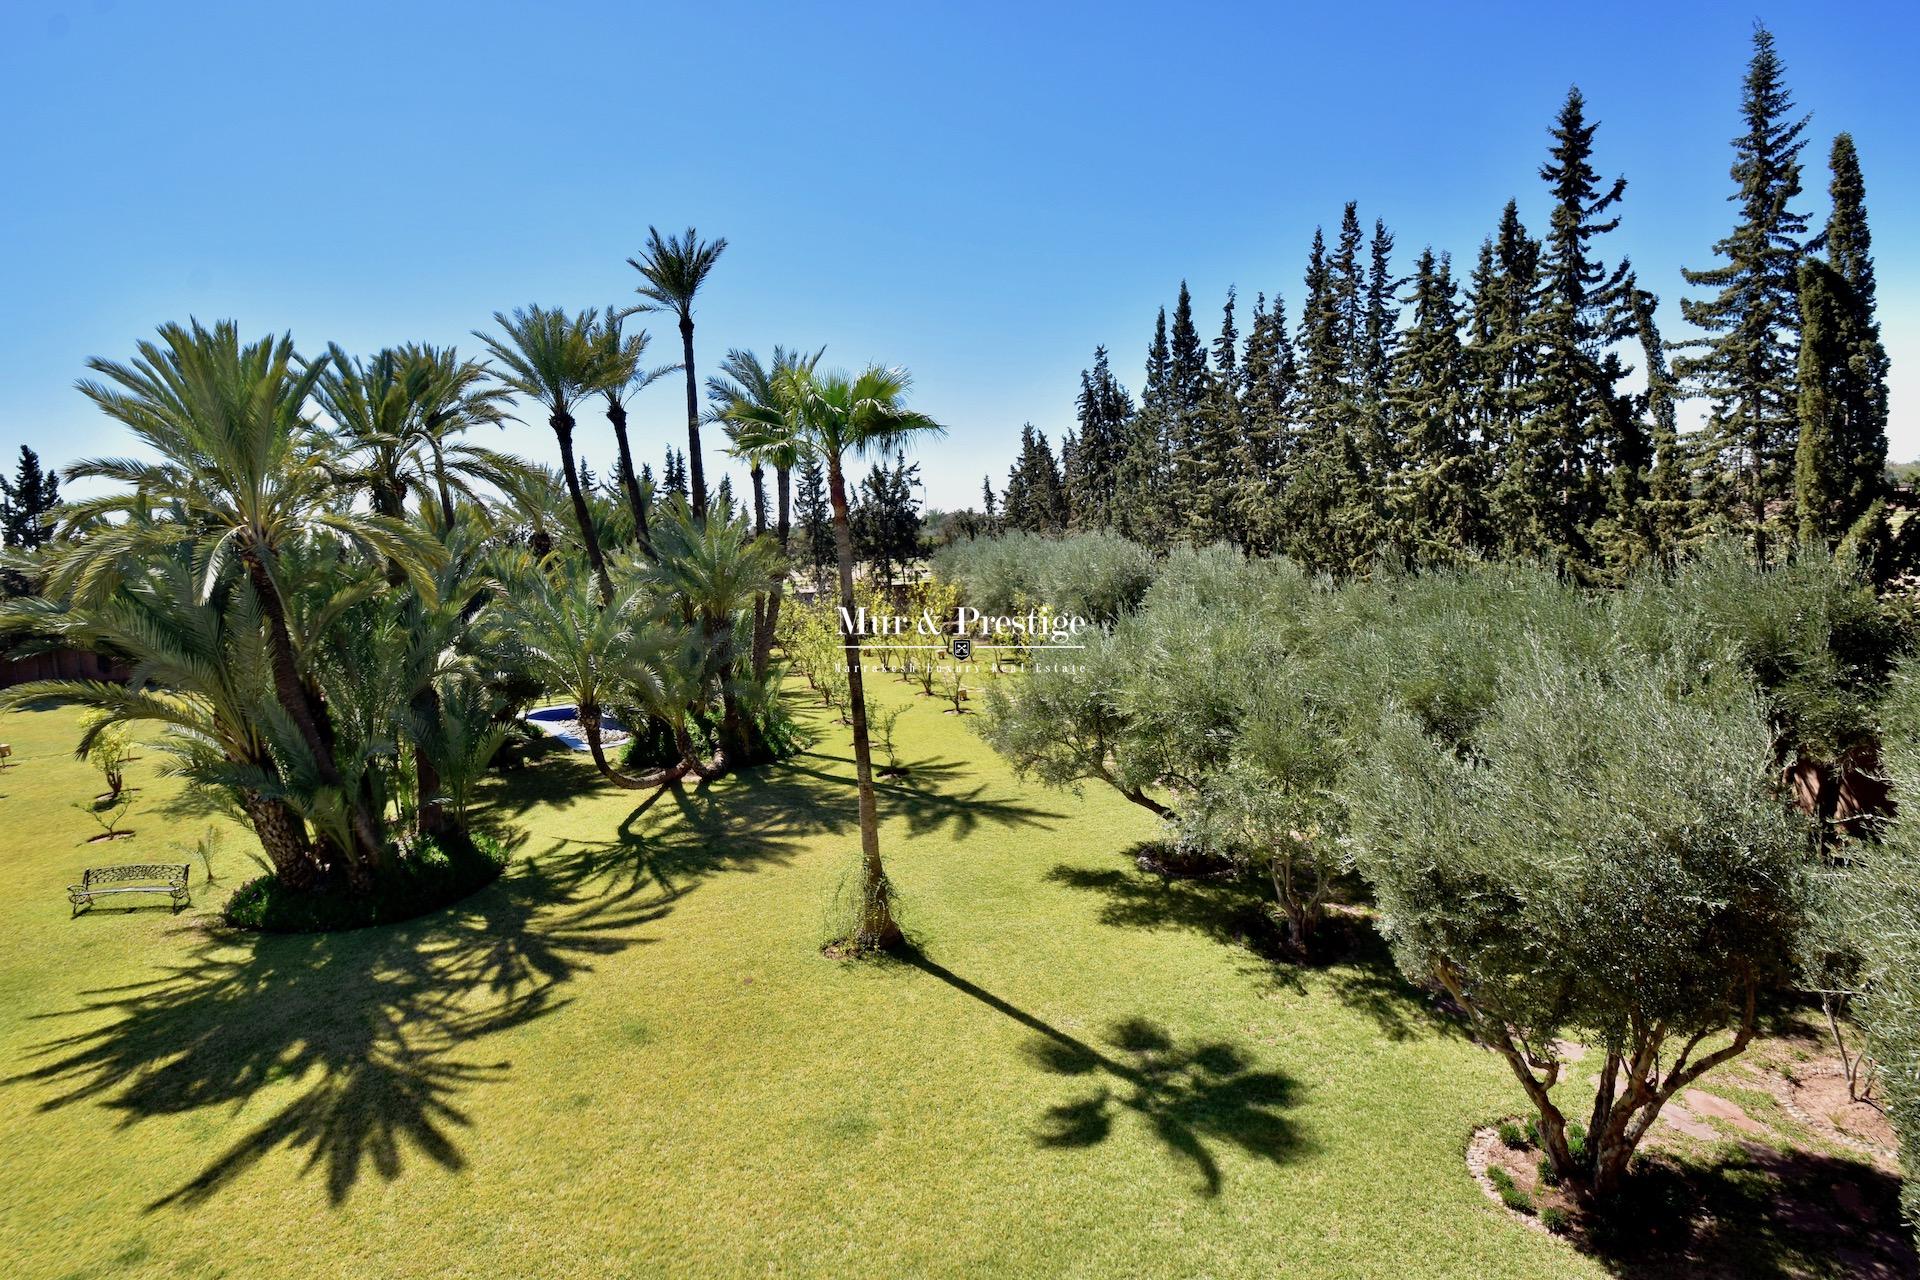 Maison à vendre Charles Boccara sur un hectare à Marrakech